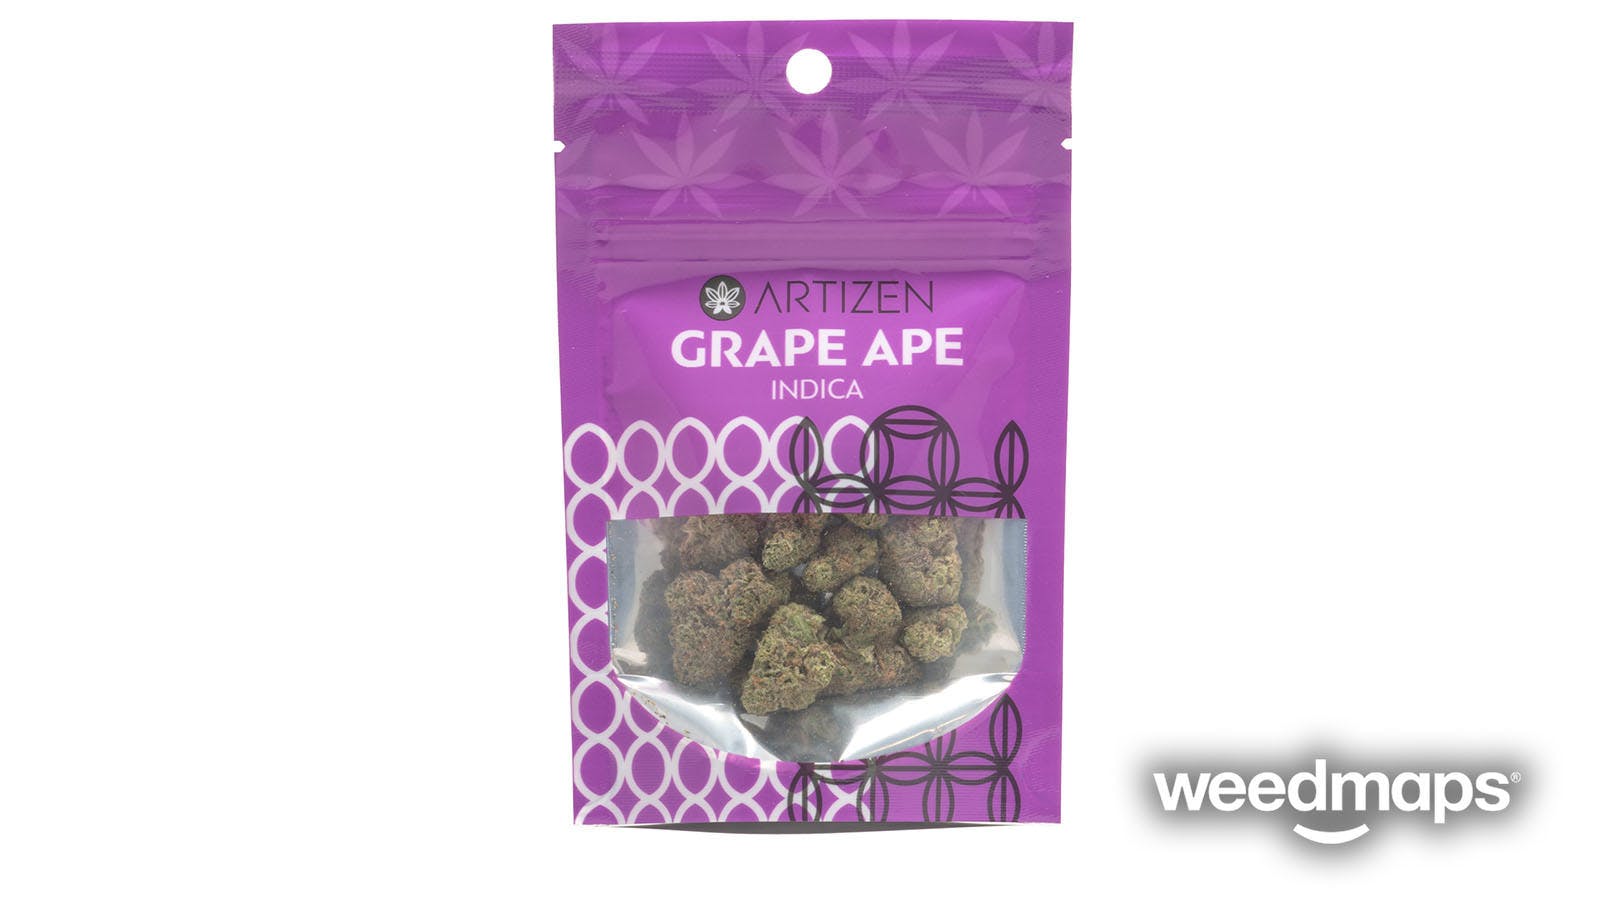 marijuana-dispensaries-cinder-spokane-valley-in-spokane-valley-grape-ape-artizen